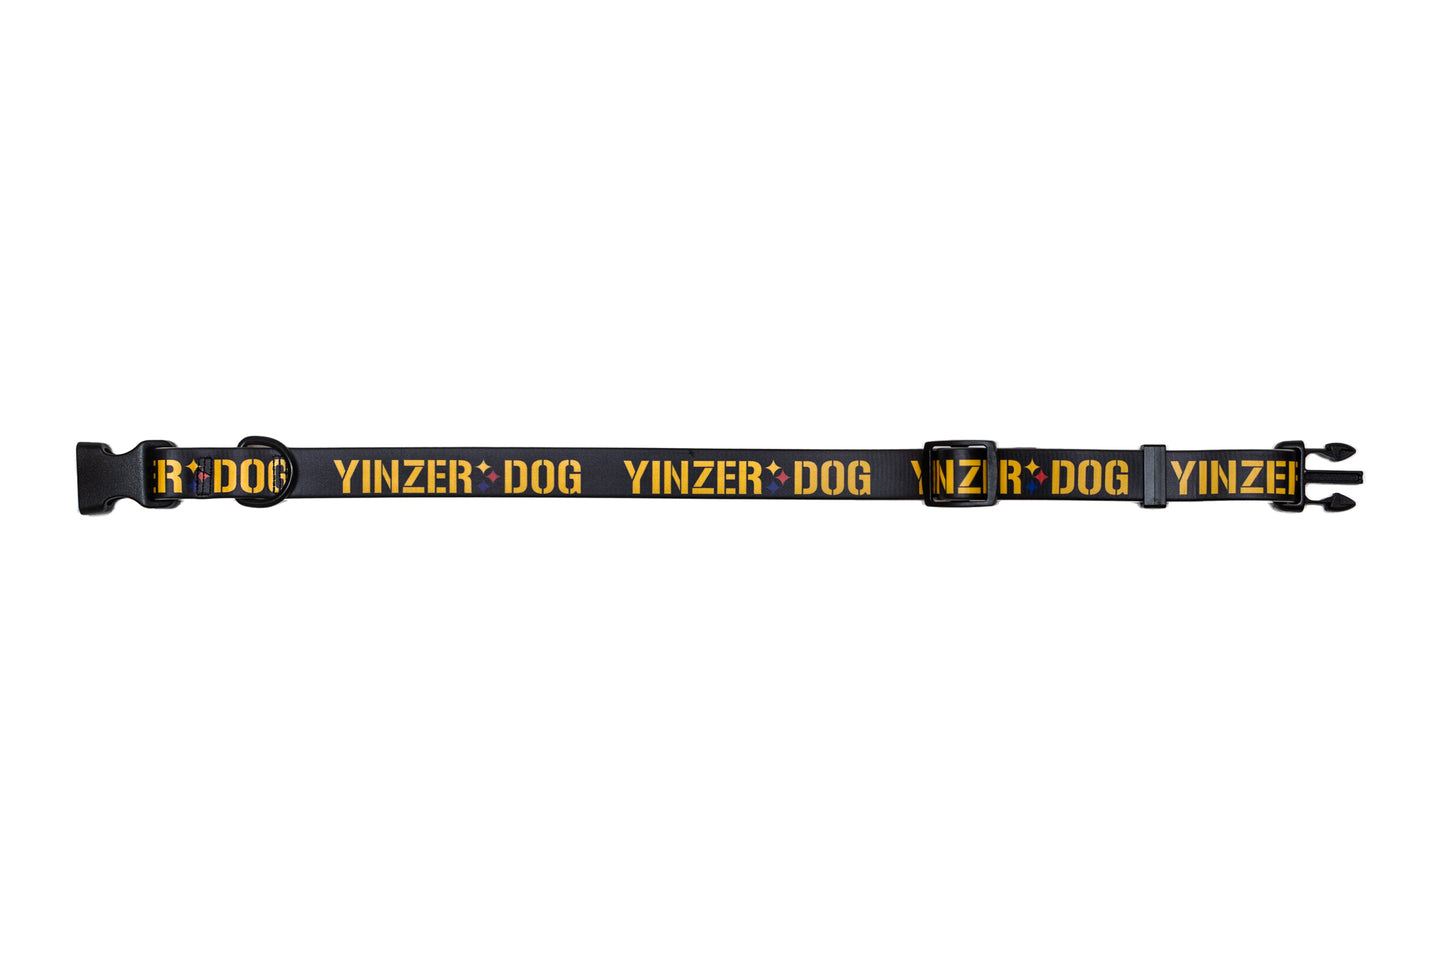 Yinzer Dog Collar - Toni Unleashed